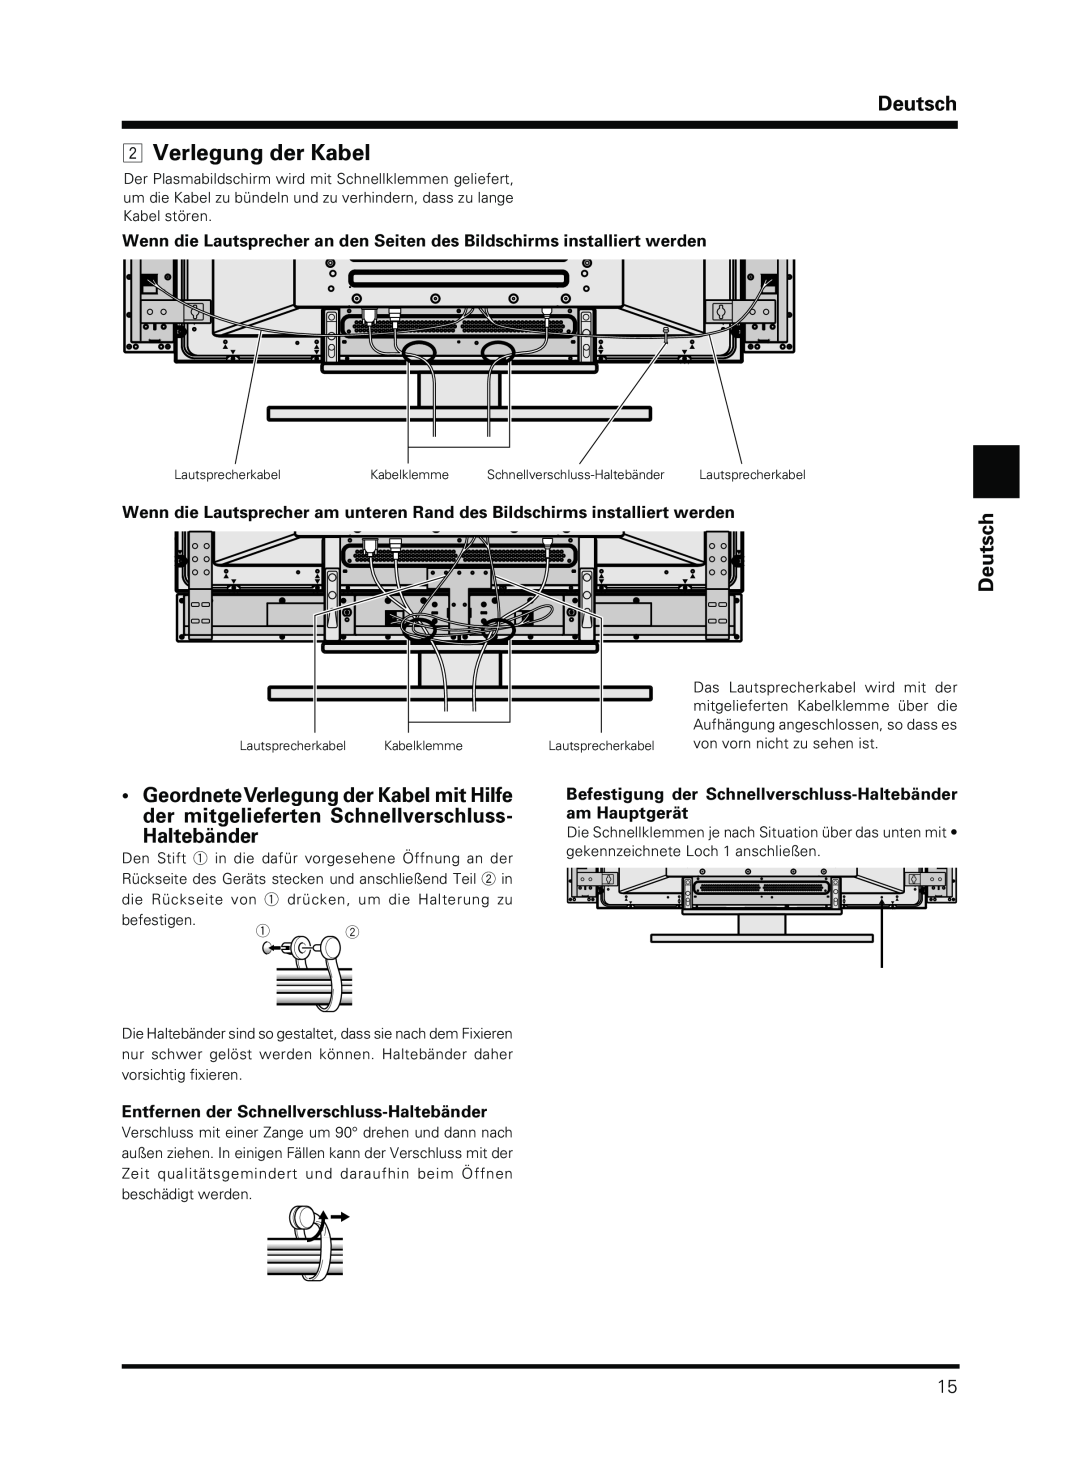 Pioneer PDP-S13-LR manual Verlegung der Kabel, Entfernen der Schnellverschluss-Haltebänder, Deutsch 